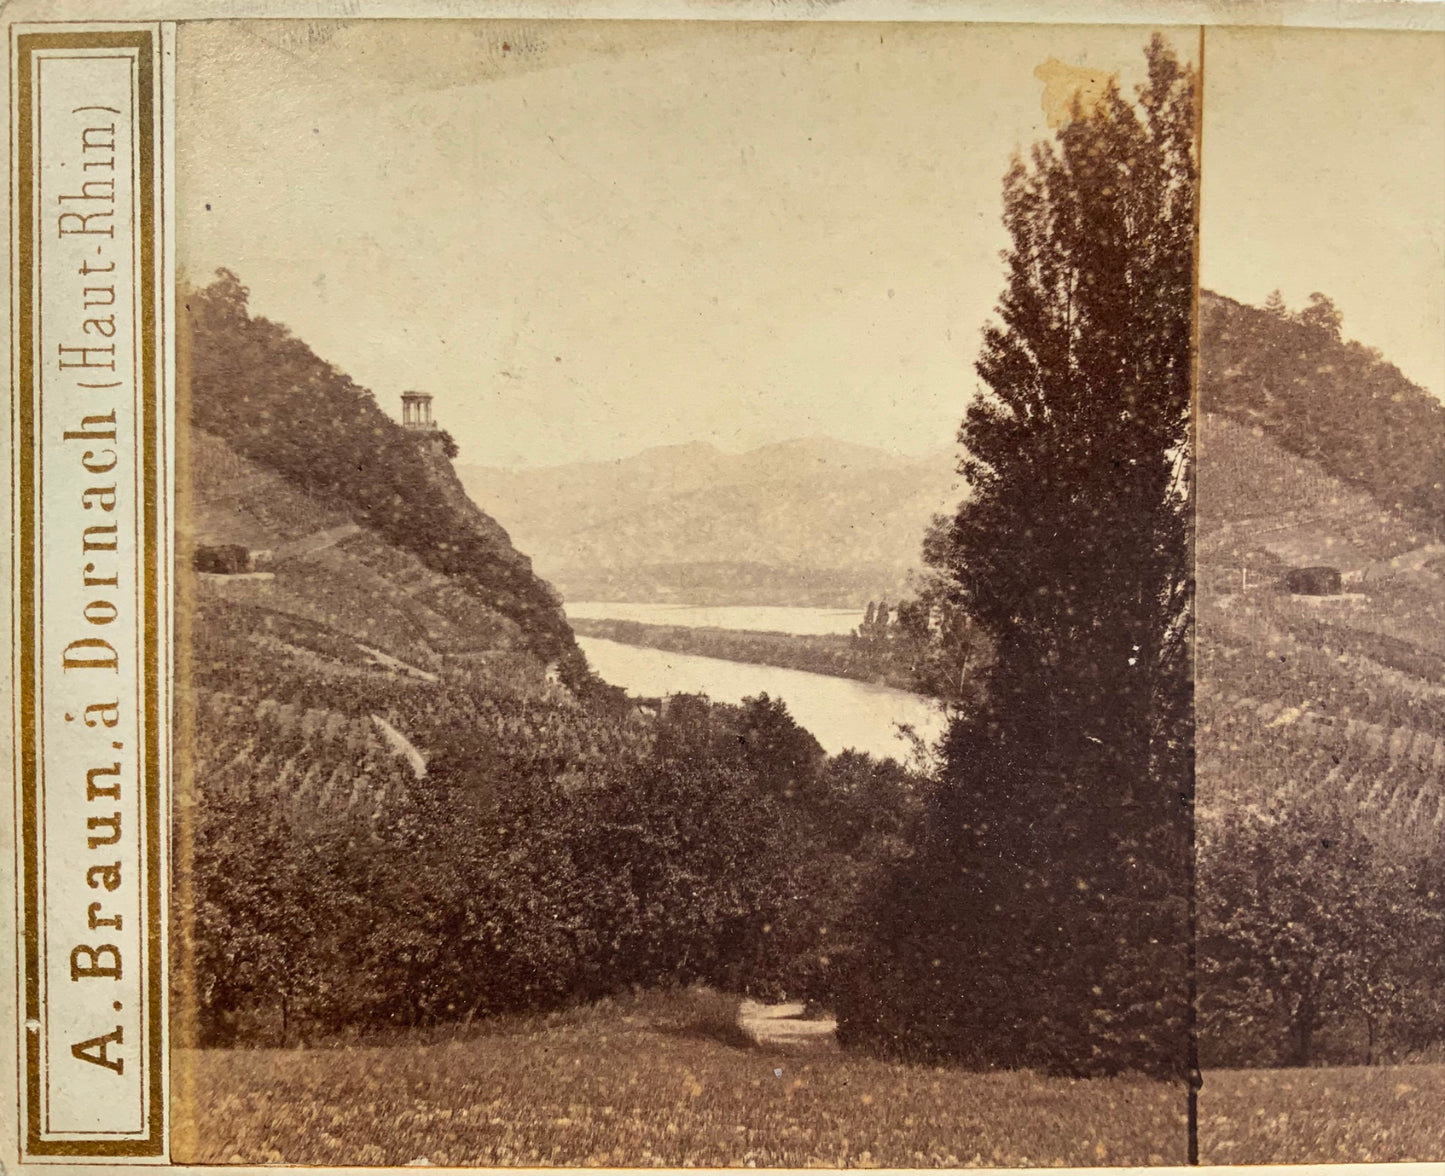 Années 1860, Adolphe Braun, Rolandseck, Allemagne, photographie stéréo